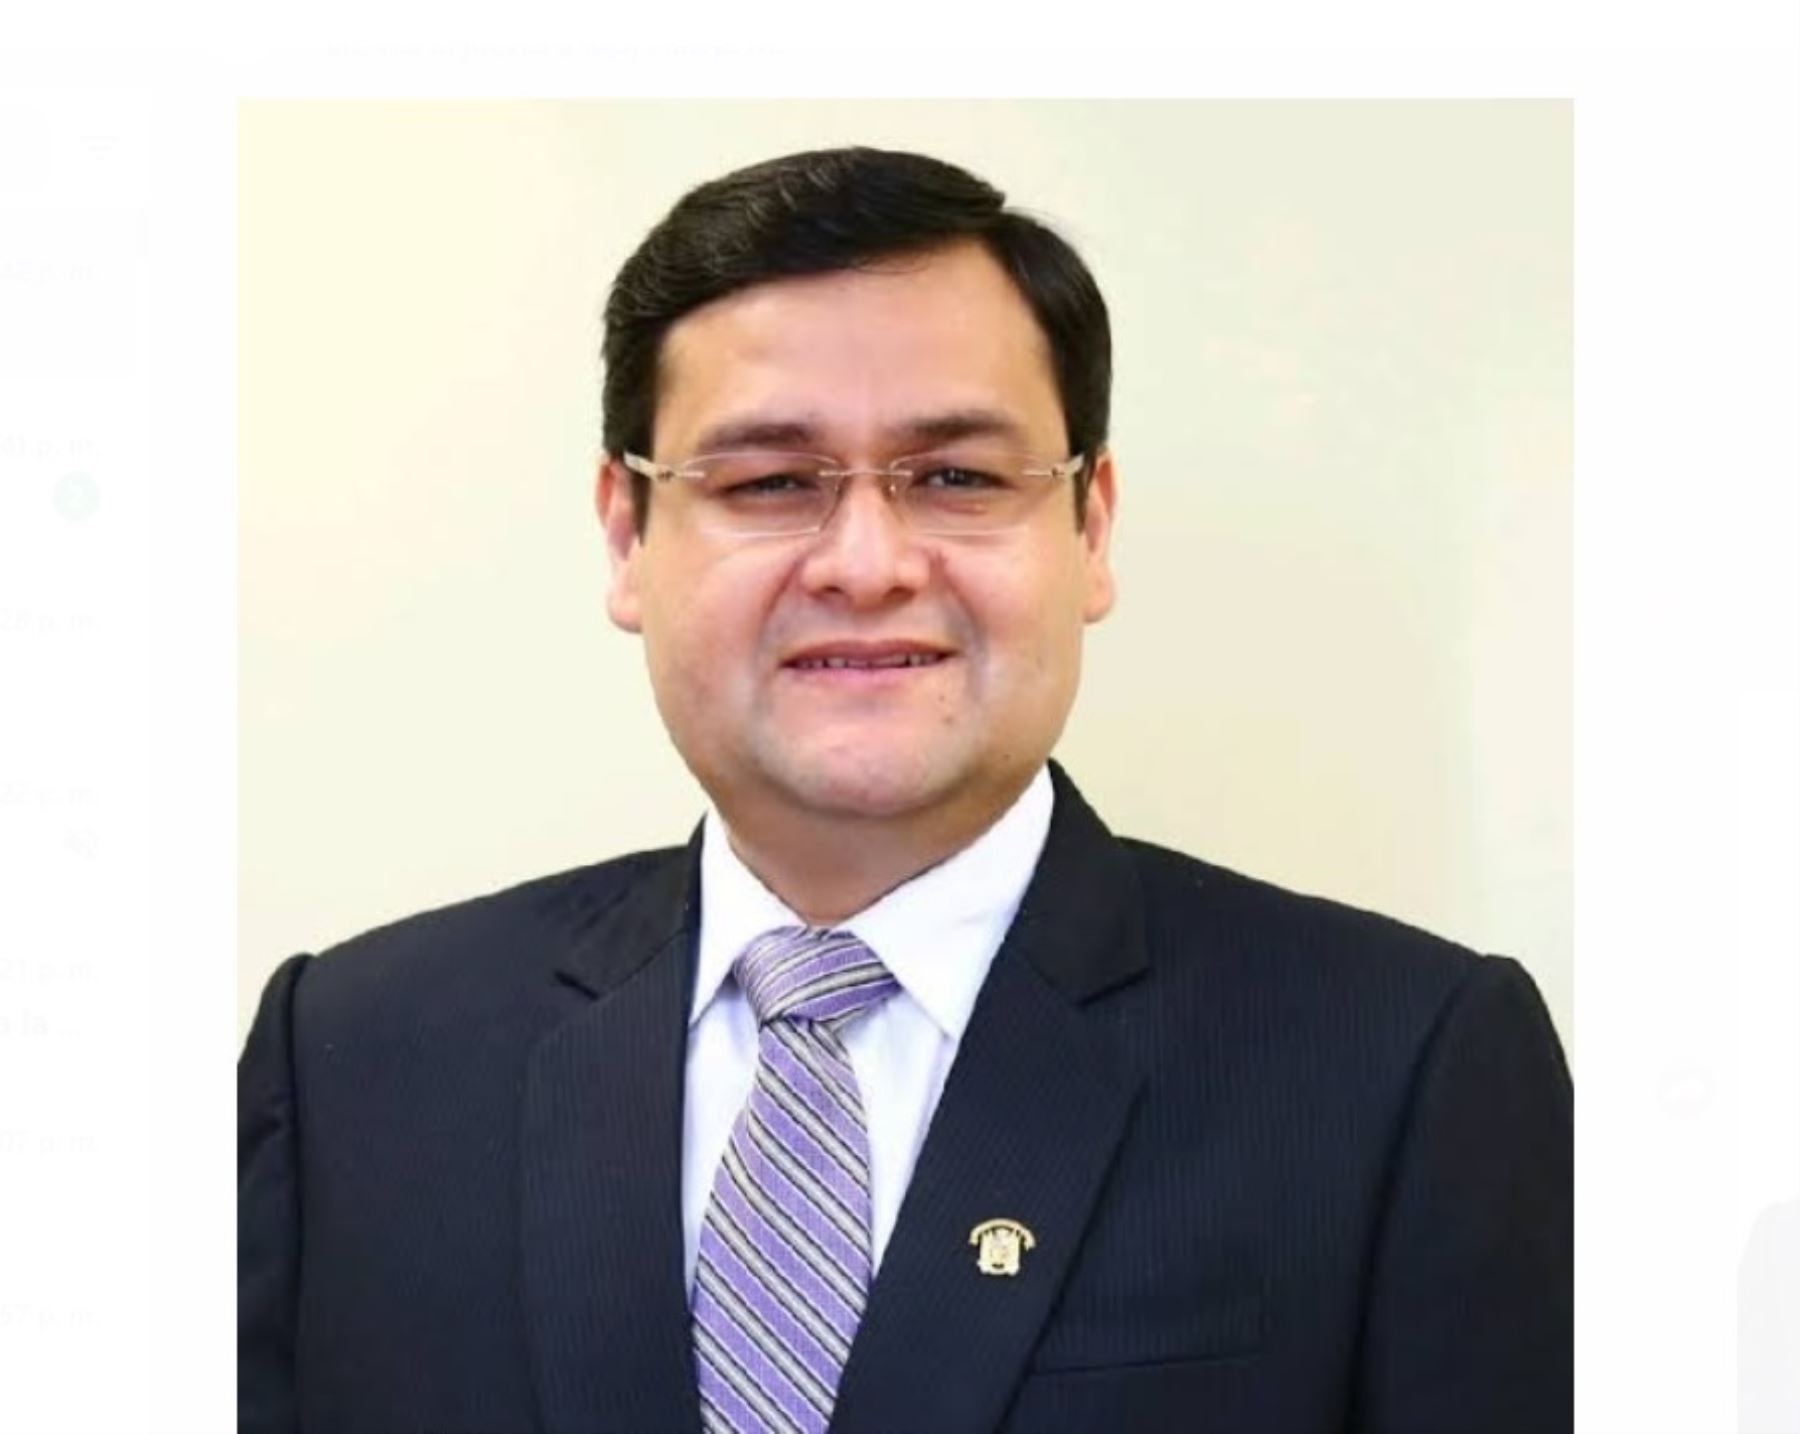 Jorge Pérez Flores fue elegido gobernador regional de Lambayeque para el período 2023-2026, de acuerdo a los resultados oficiales de la ONPE.